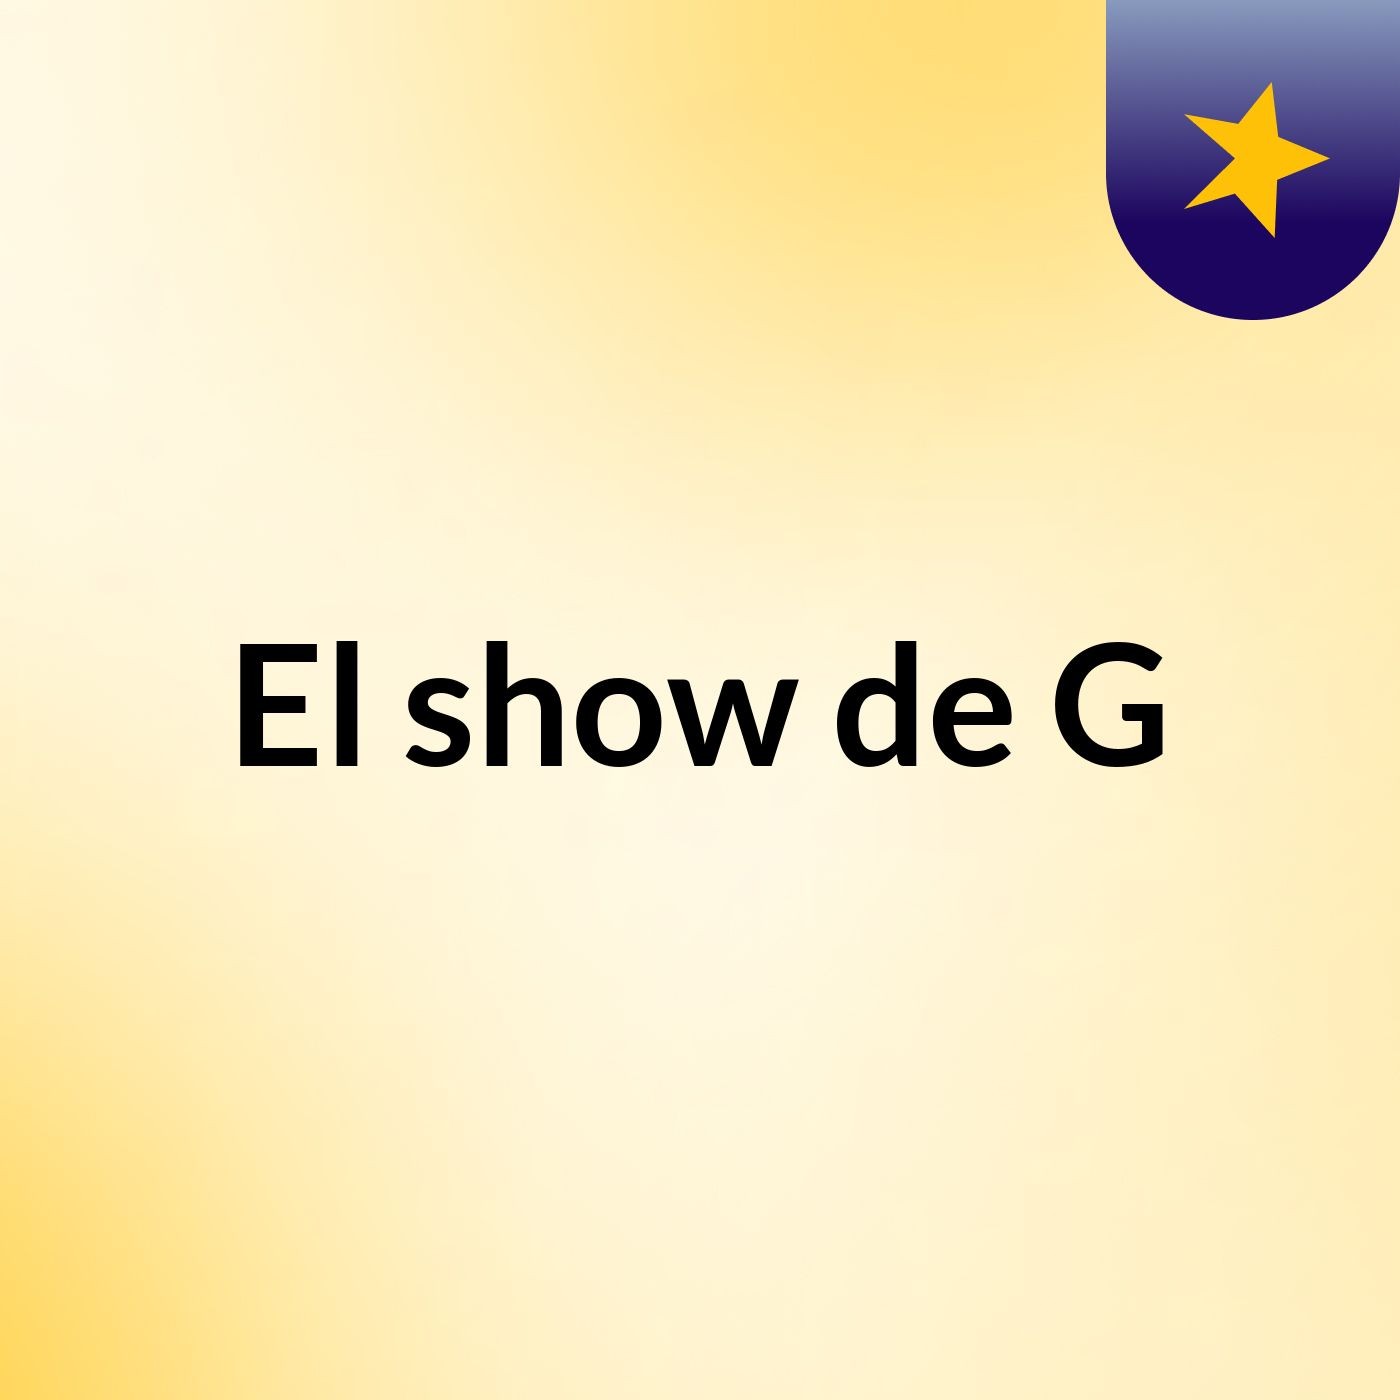 El show de G